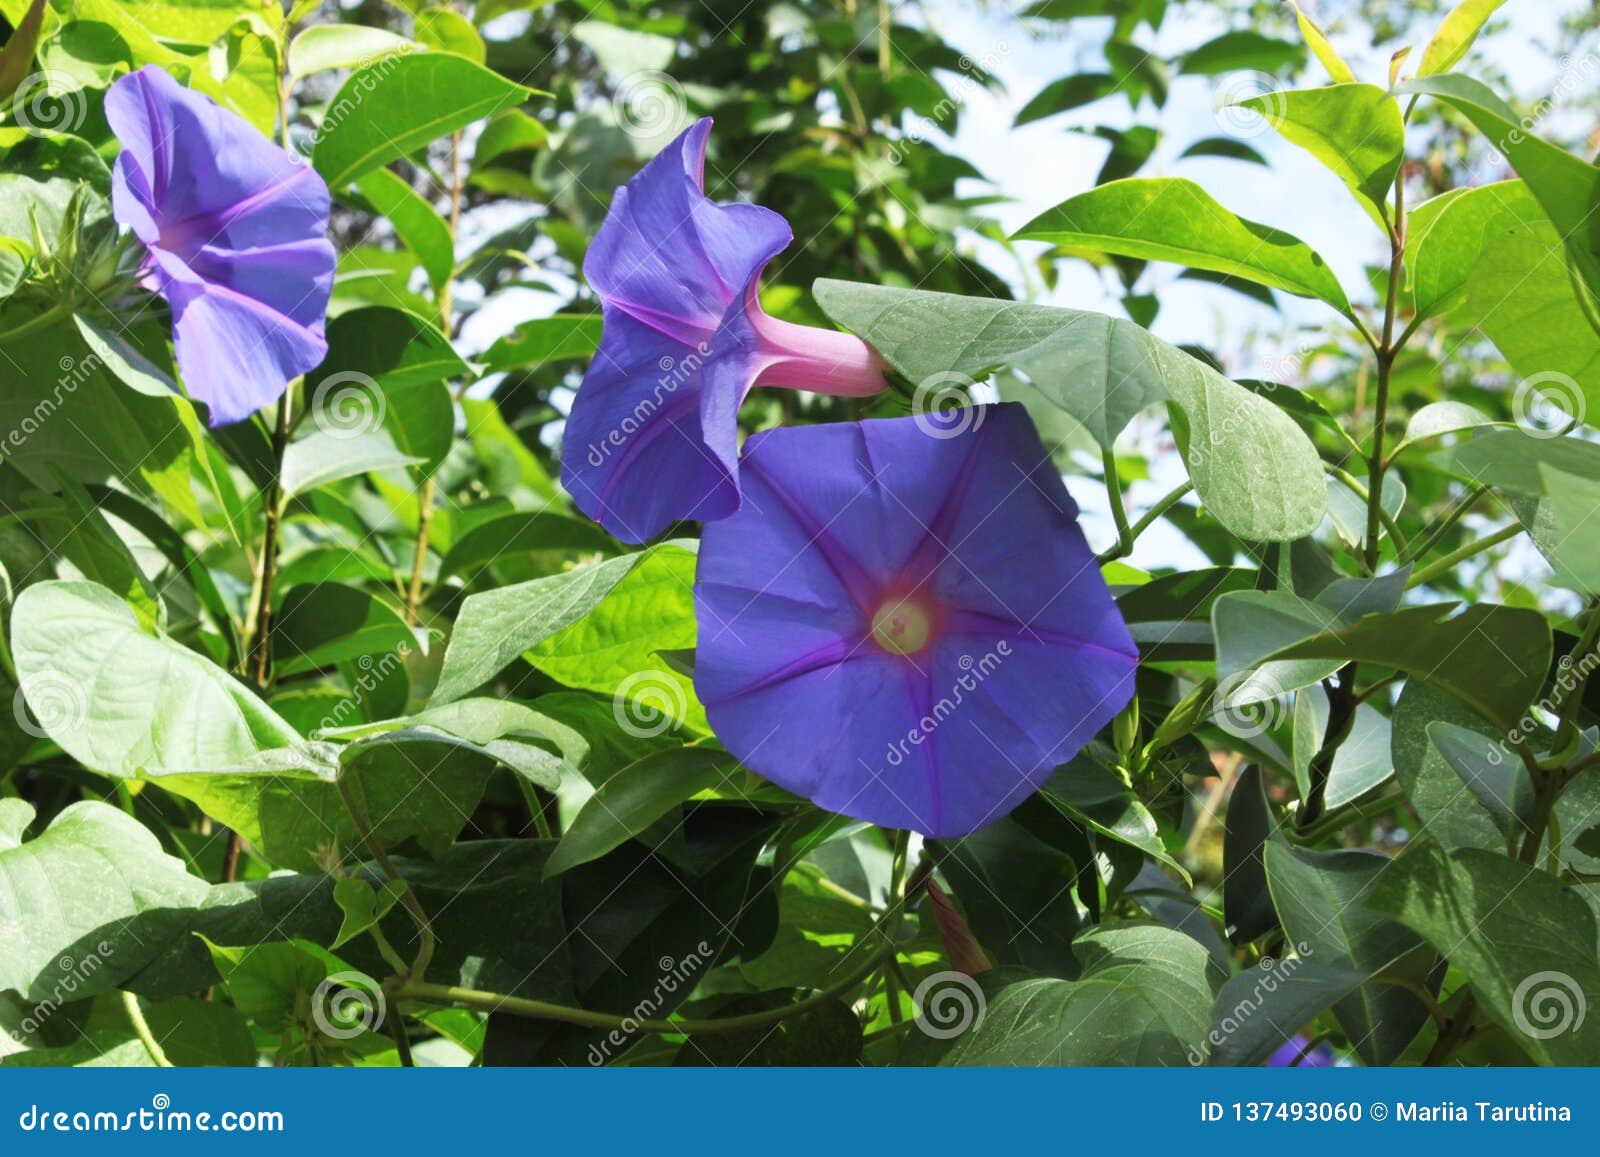 Liseron violet de fleurs photo stock. Image du beauté - 137493060